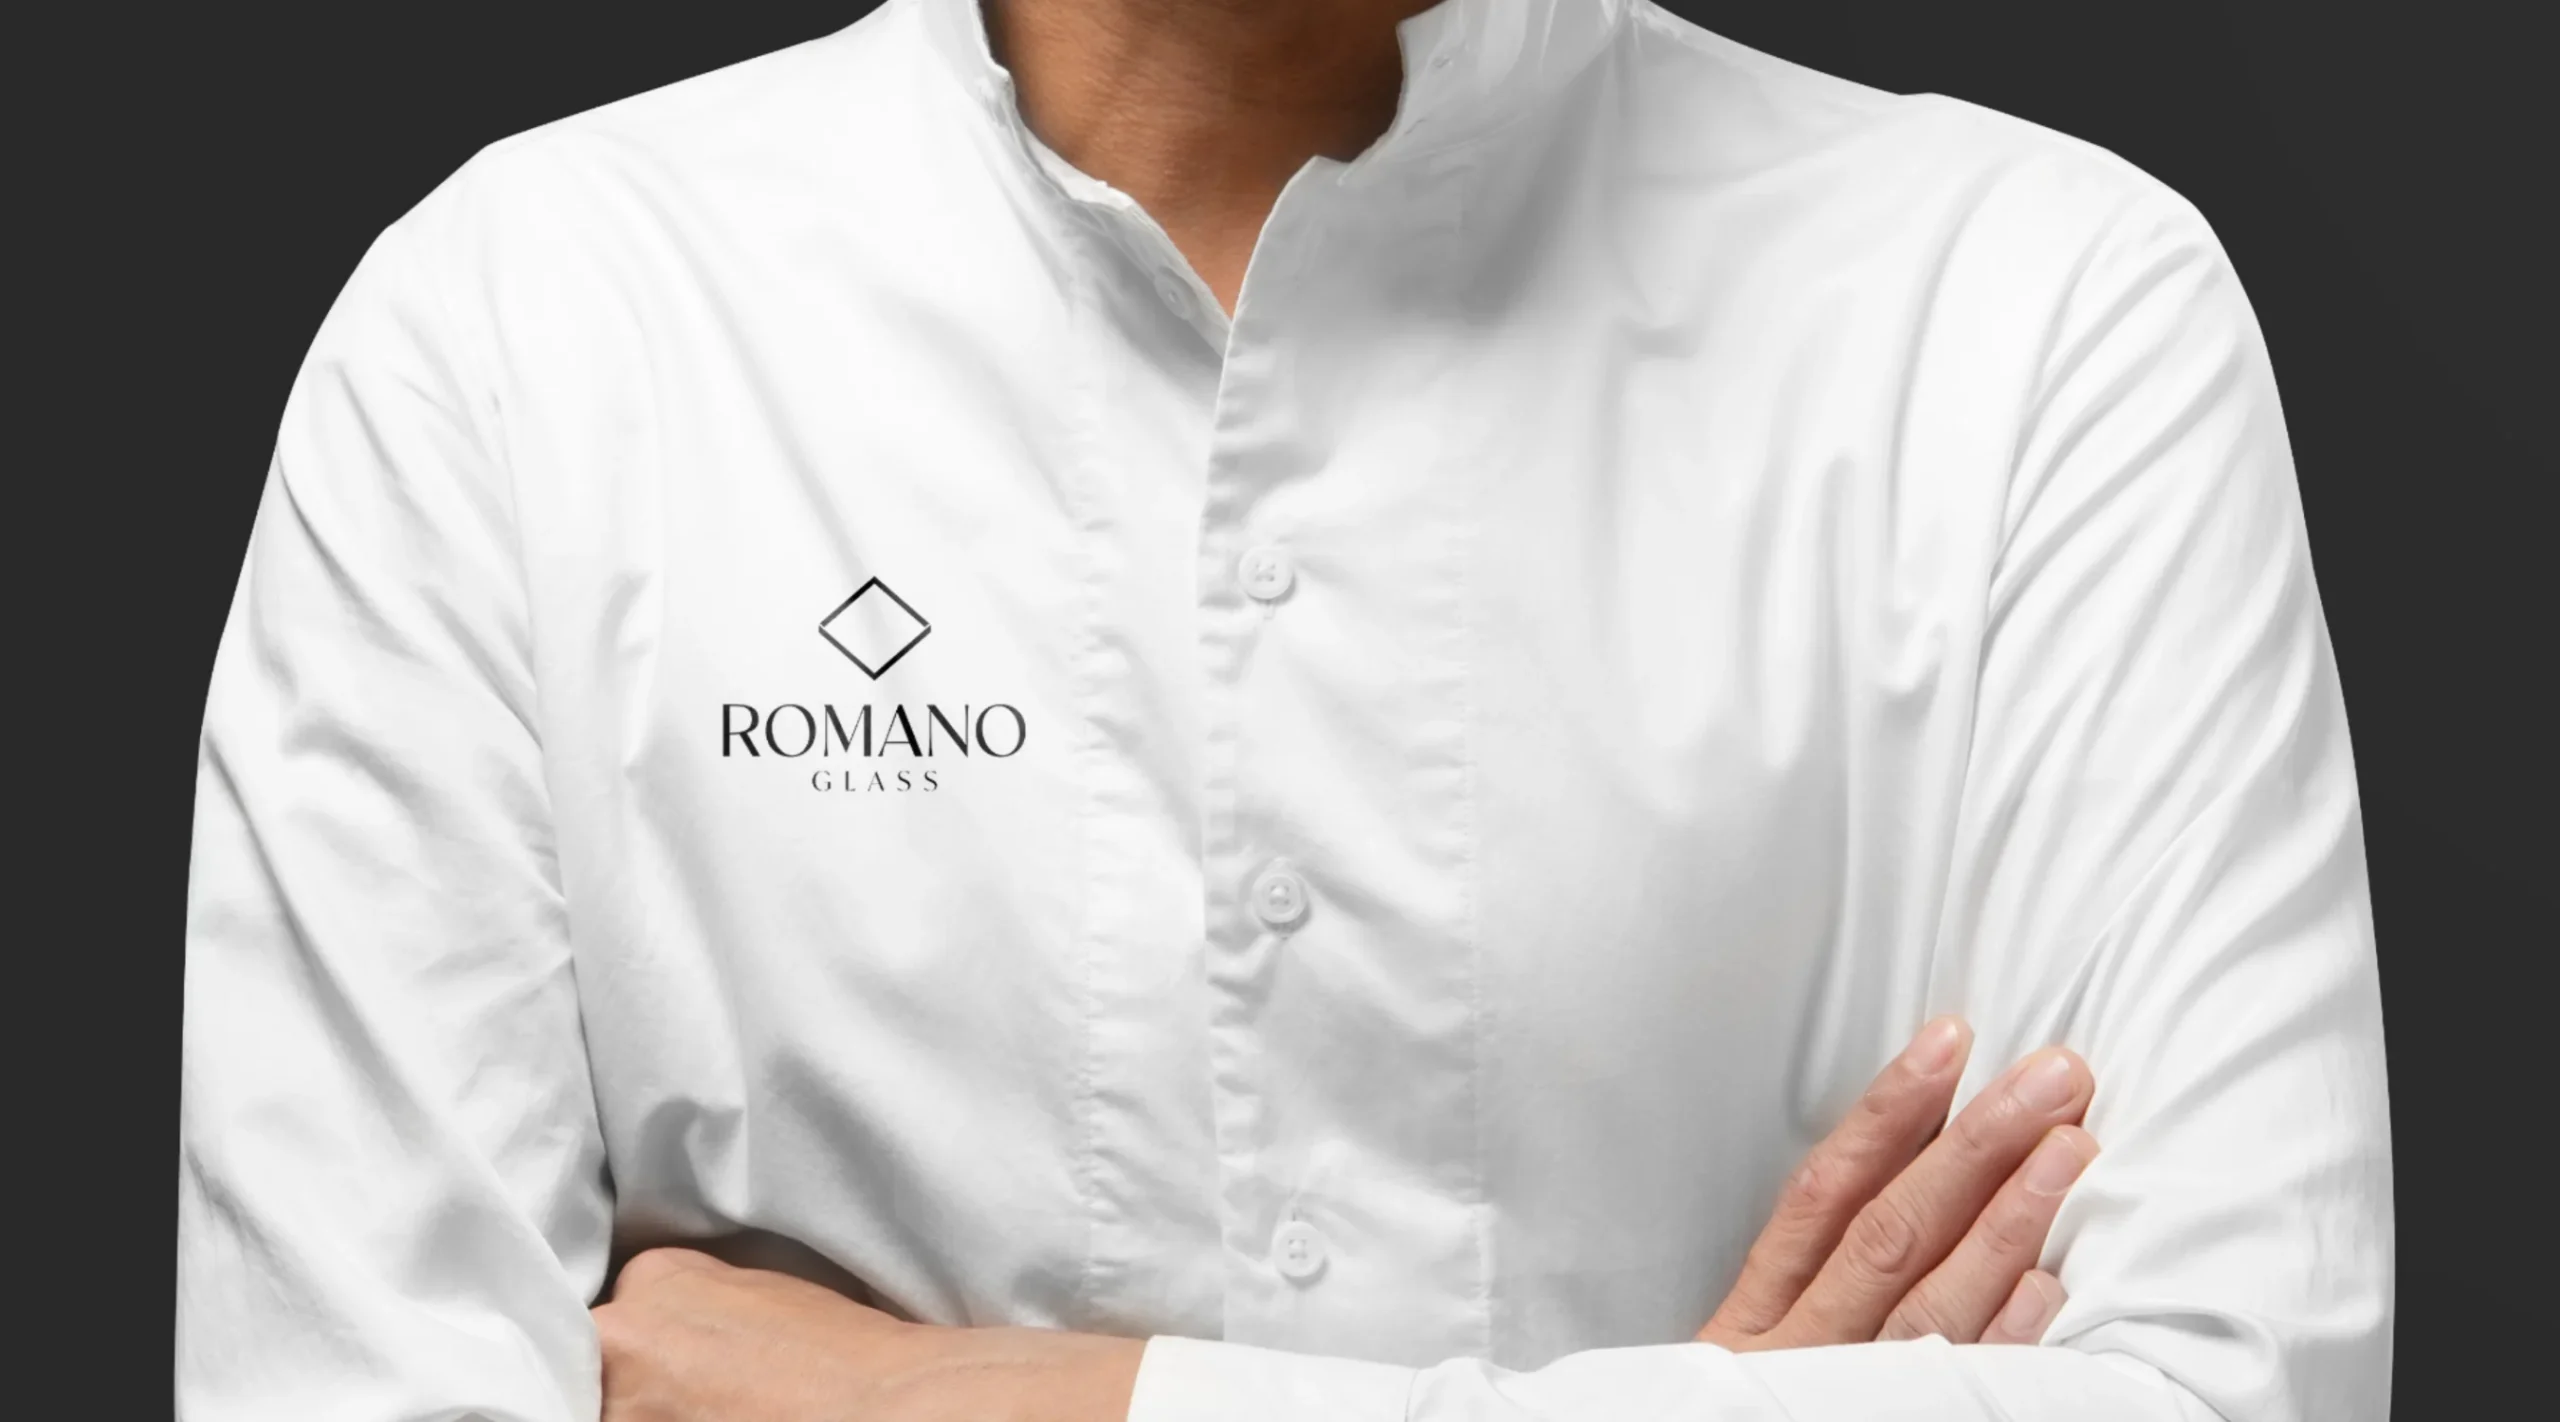 Empleado con camisa blanca bordada con el logotipo de Romano Glass, representando la identidad profesional de la marca.